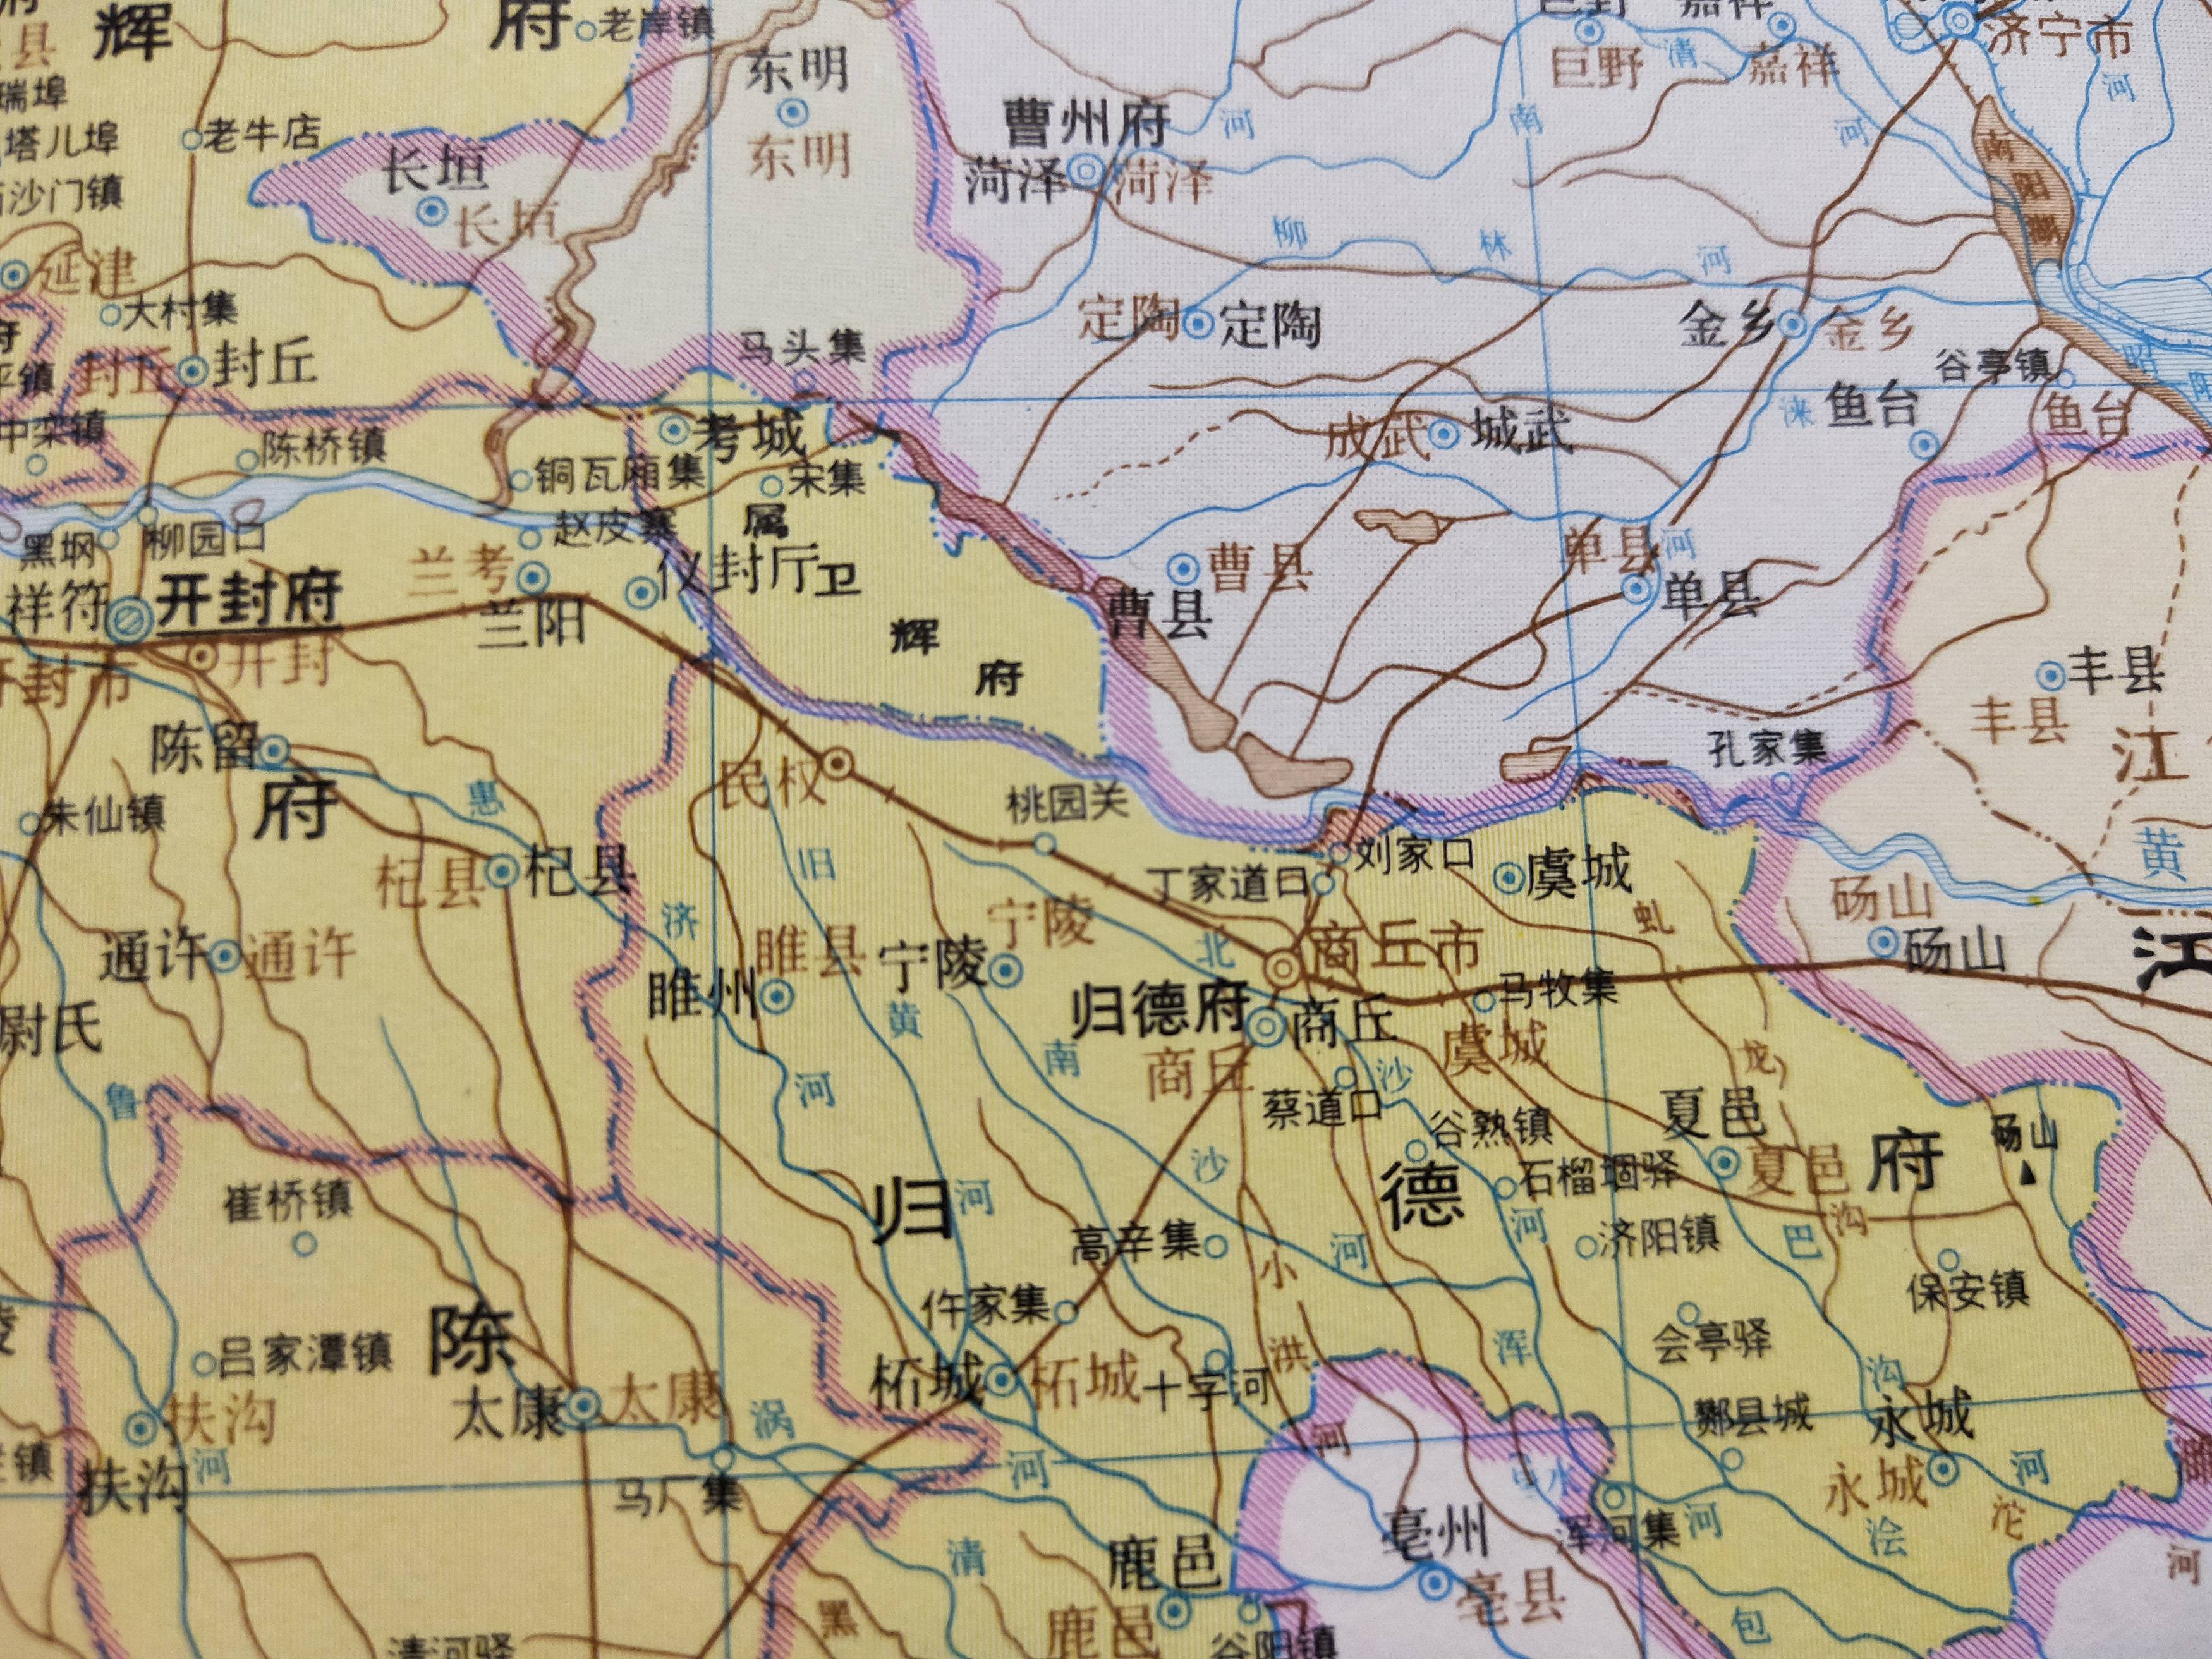 相关资料来源于《中国历史地图集》与《中国地名沿革对照表